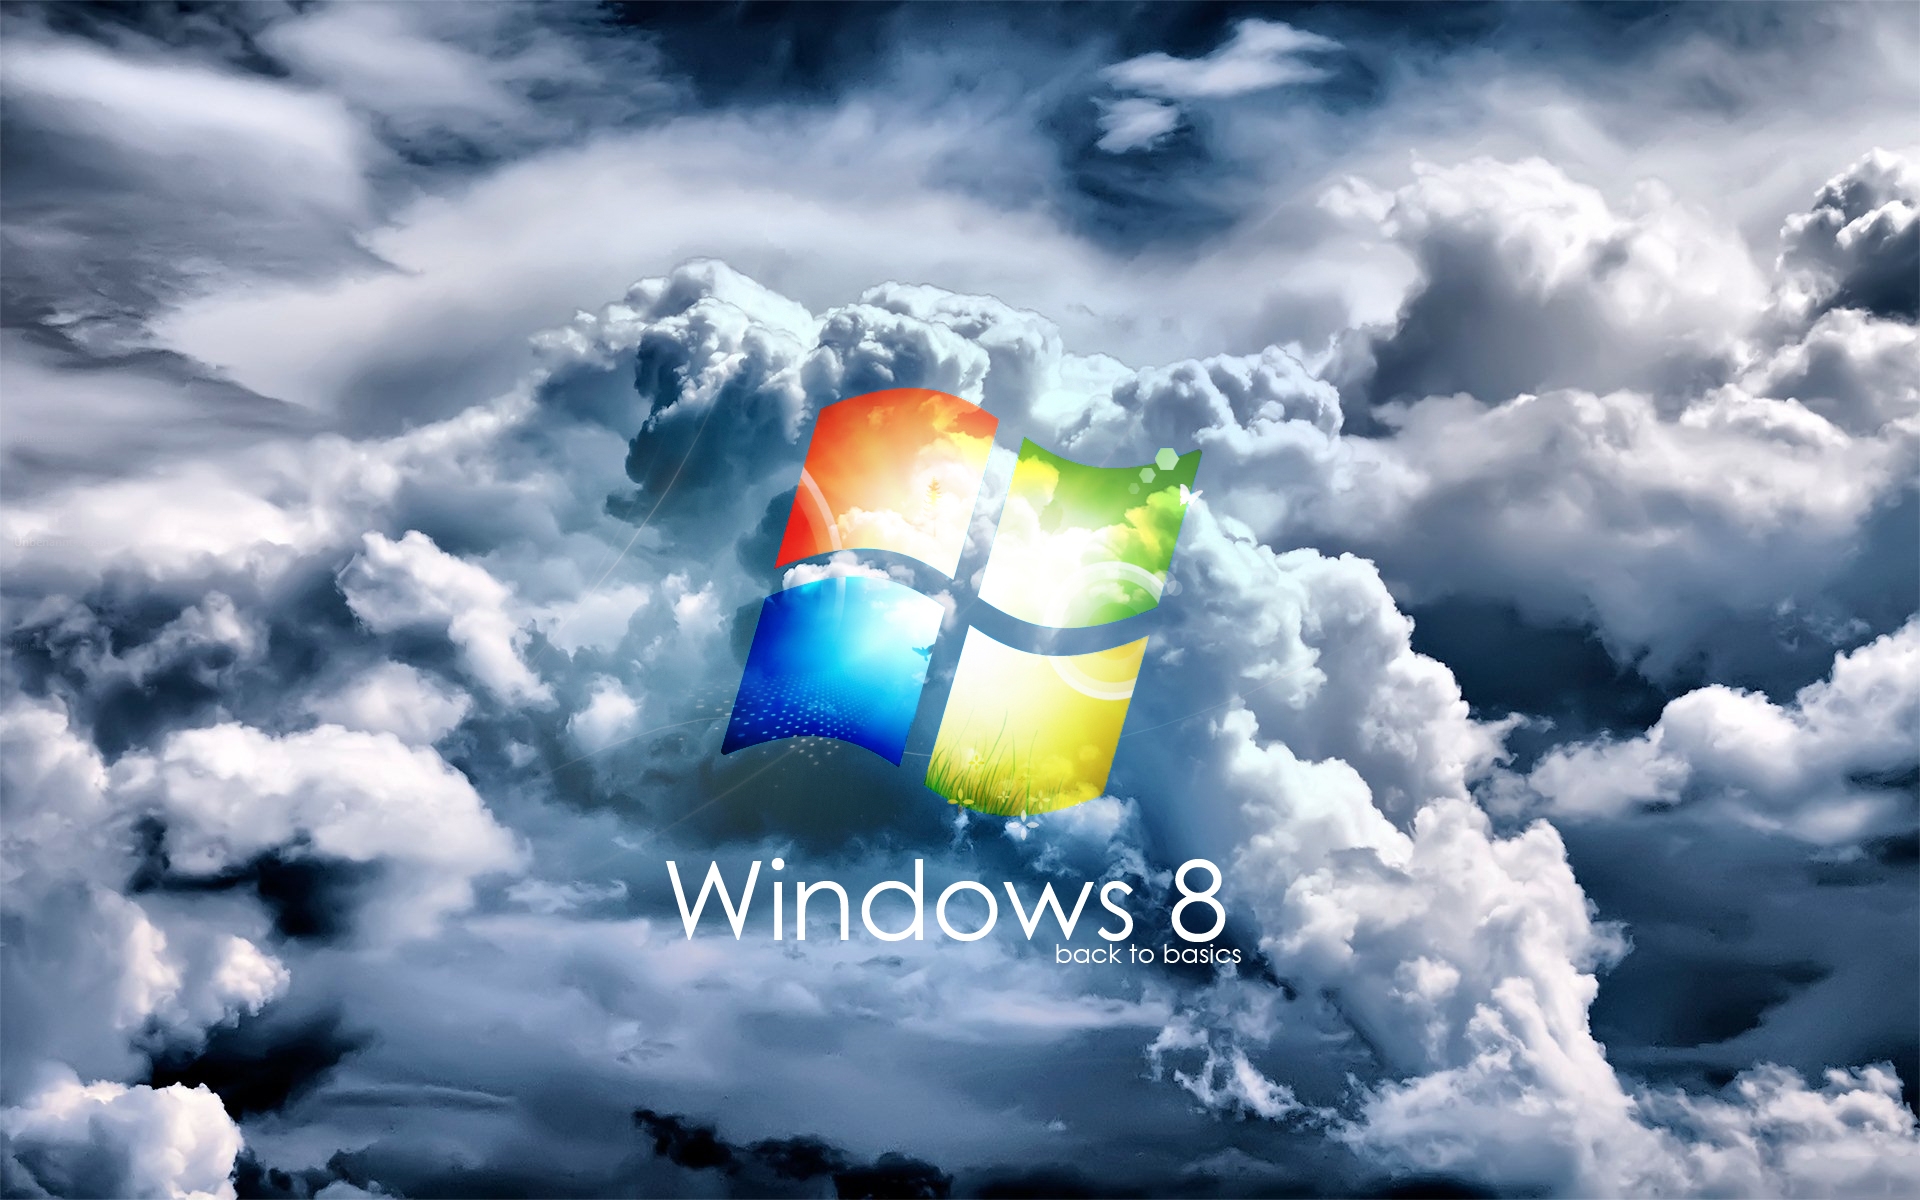 Windows 7 wallpaper hd 3d for desktop